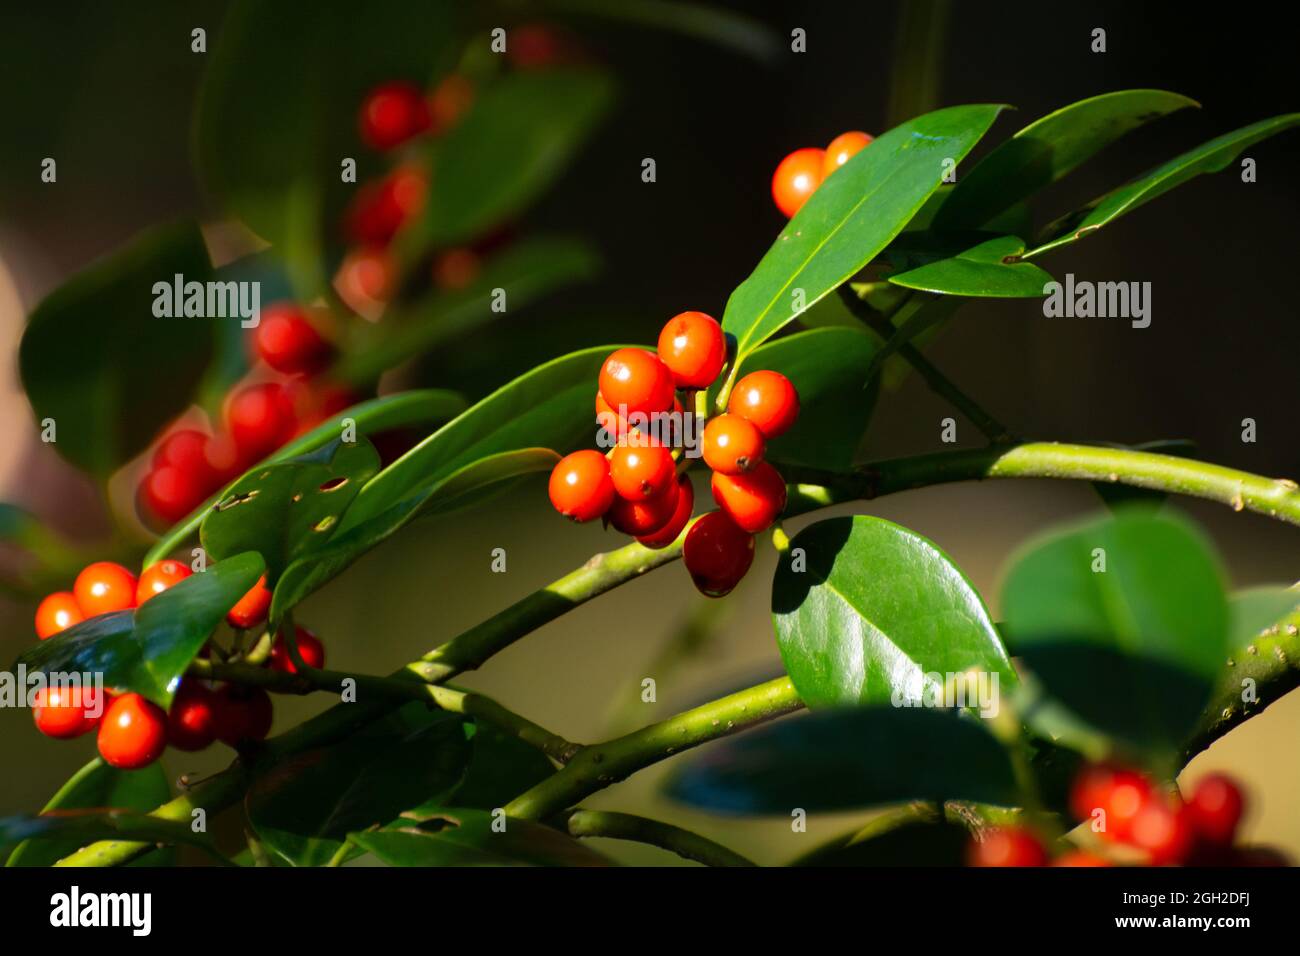 Red ripe berries of ilex aquifolium plant in autumn Stock Photo